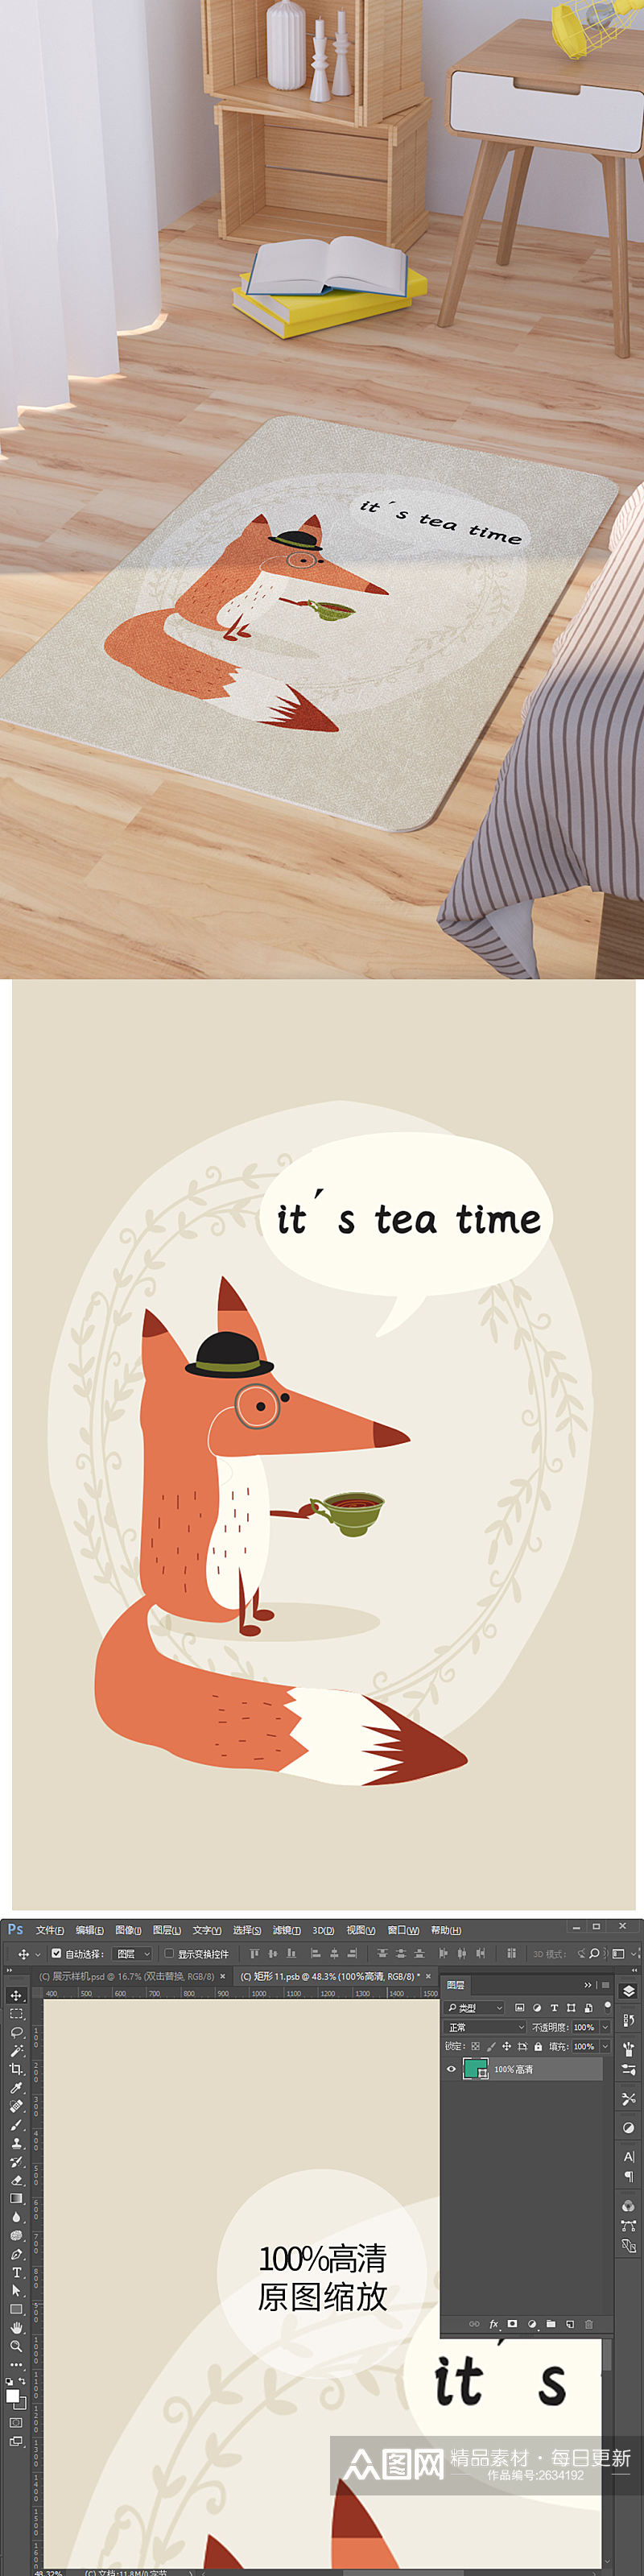 矢量手绘卡通可爱狐狸喝茶脚垫地毯图案素材